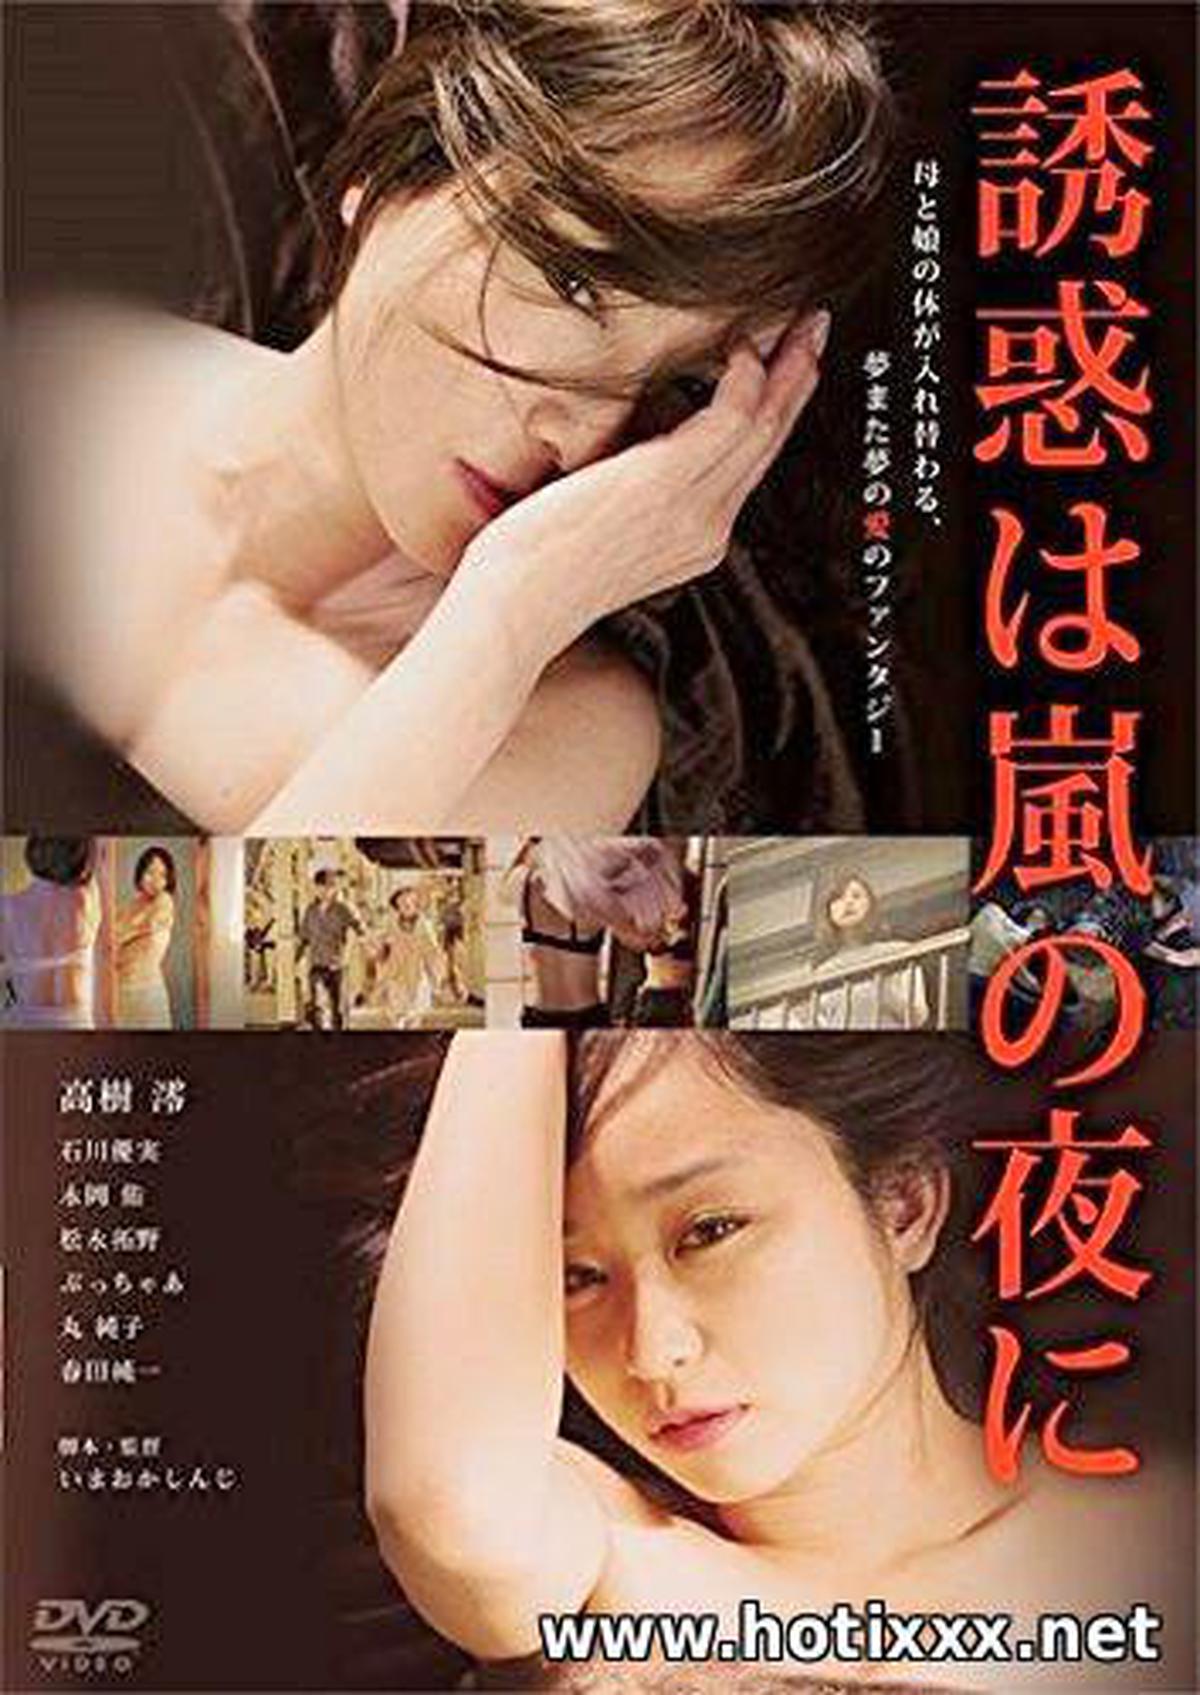 誘惑 は 嵐 の 夜 に / Yuwaku ha arashi no yoru ni / جاء الإغراء في ليلة عاصفة (2016)